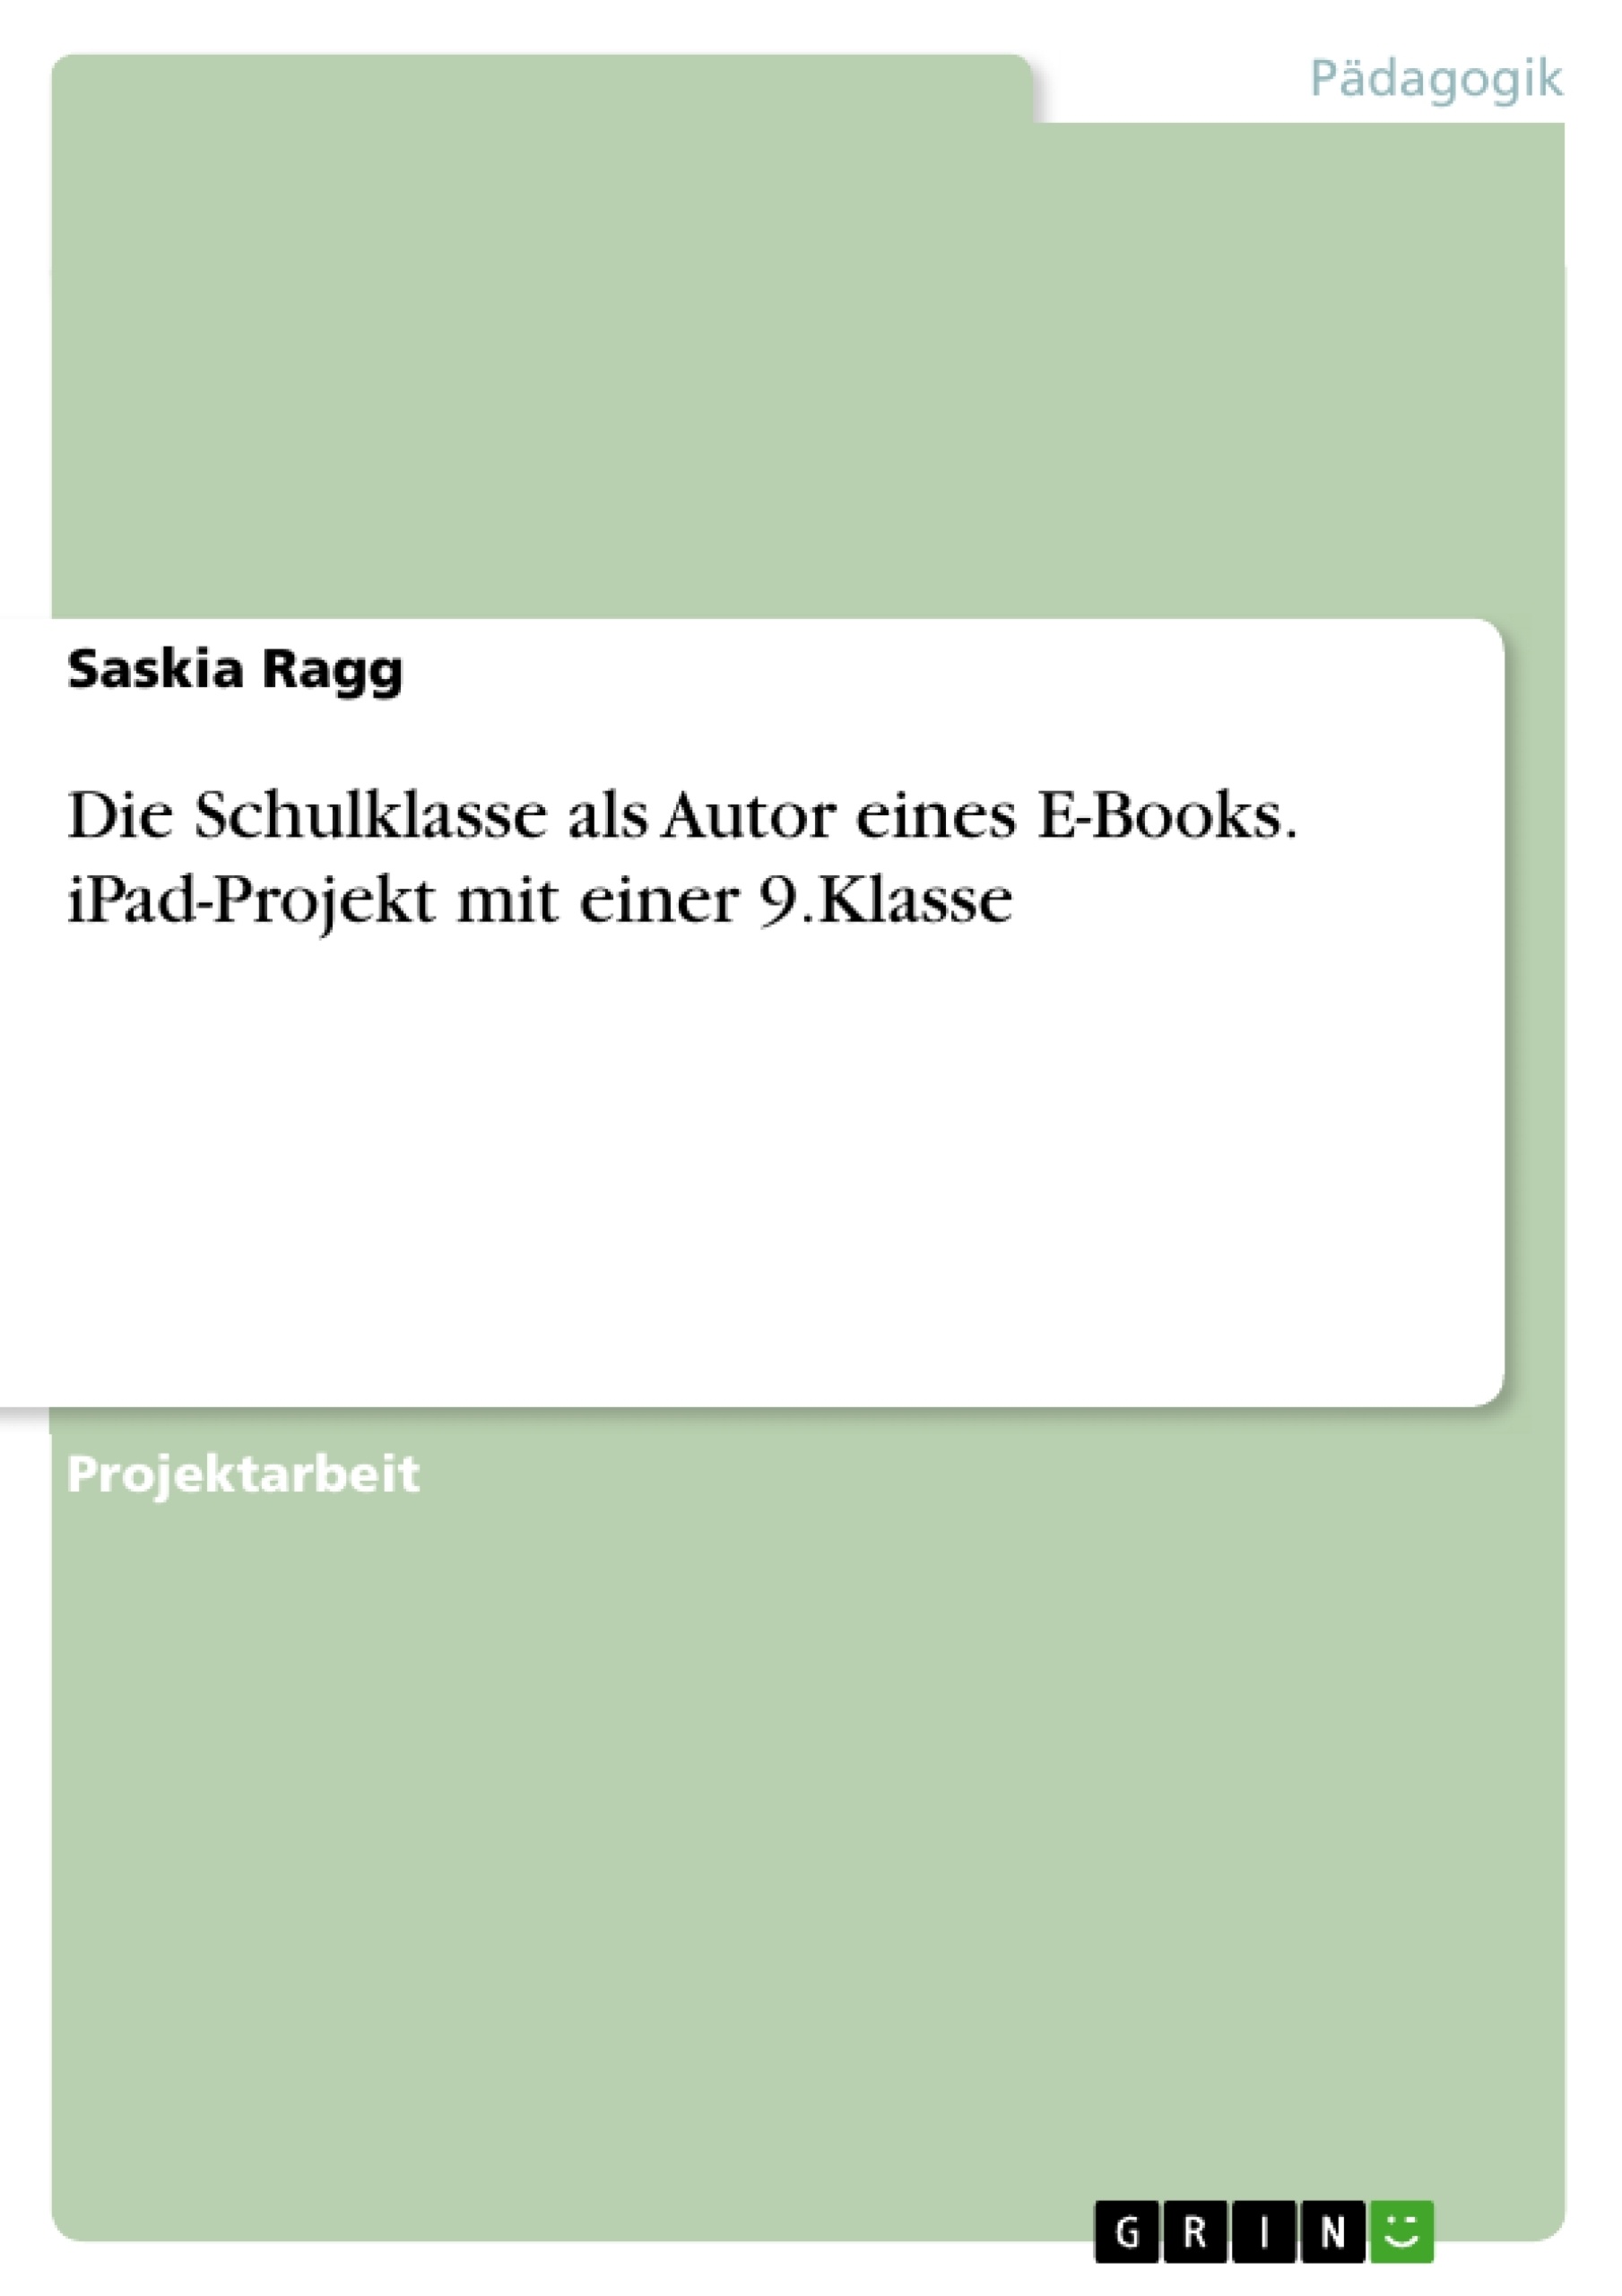 Titel: Die Schulklasse als Autor eines E-Books. iPad-Projekt mit einer 9.Klasse